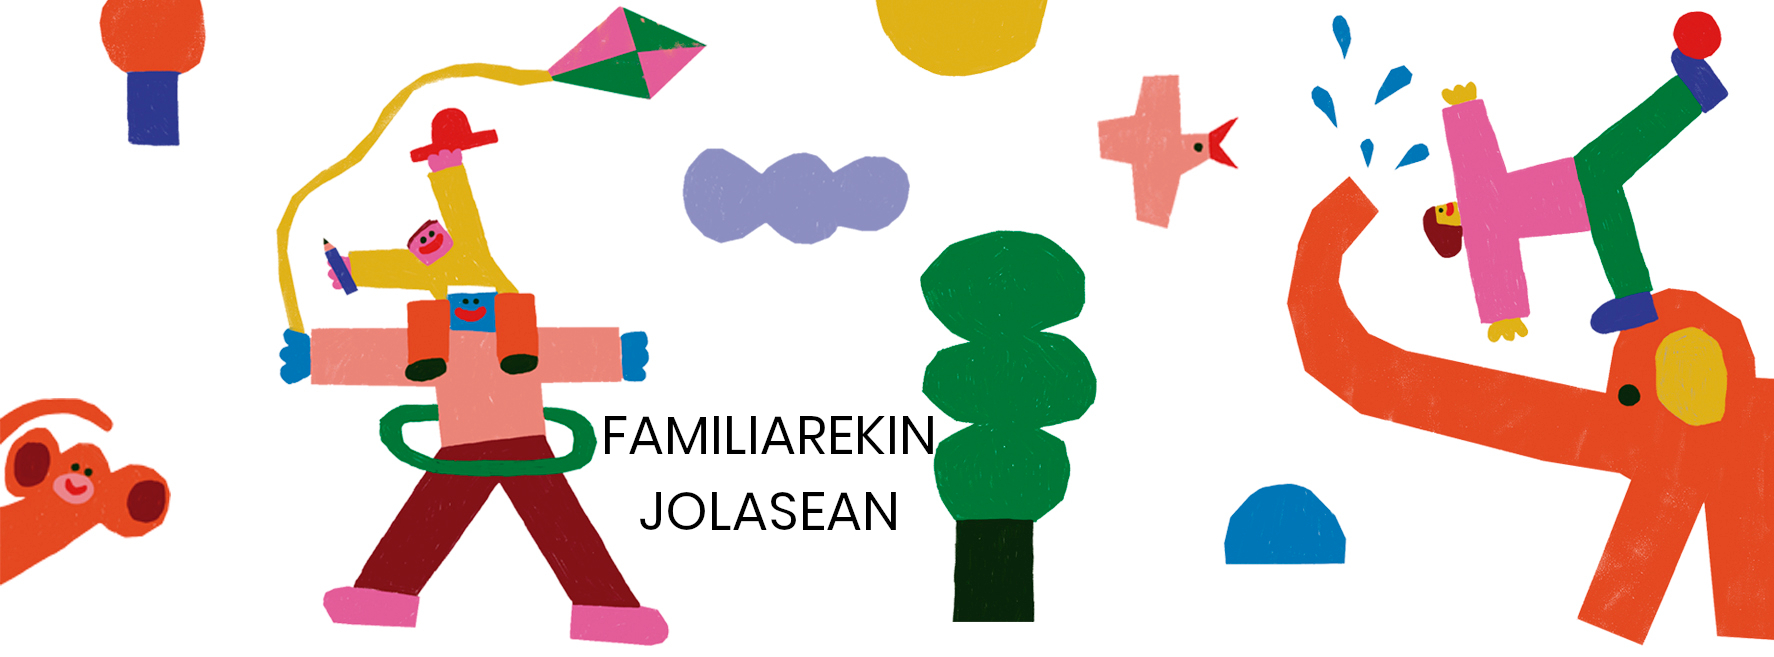 Dibujo infantil con el texto 'Familiarekin jolasean'